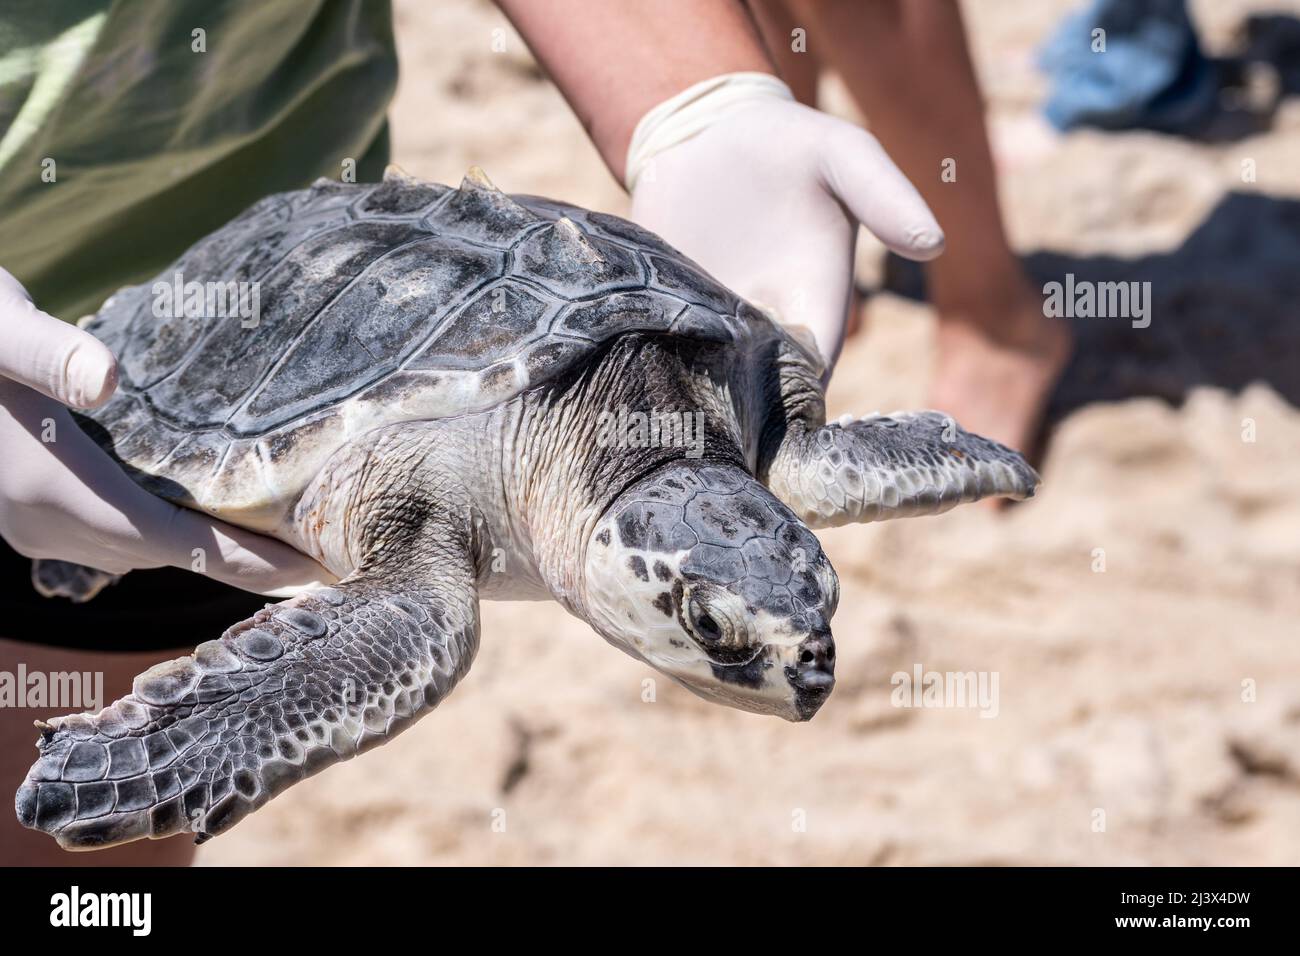 La liberación de tortugas marinas Ridley de Kemp de tortugas en peligro crítico de extinción de Massachusetts rehabilitada en la costa del Golfo de Mississippi, Estados Unidos. Foto de stock